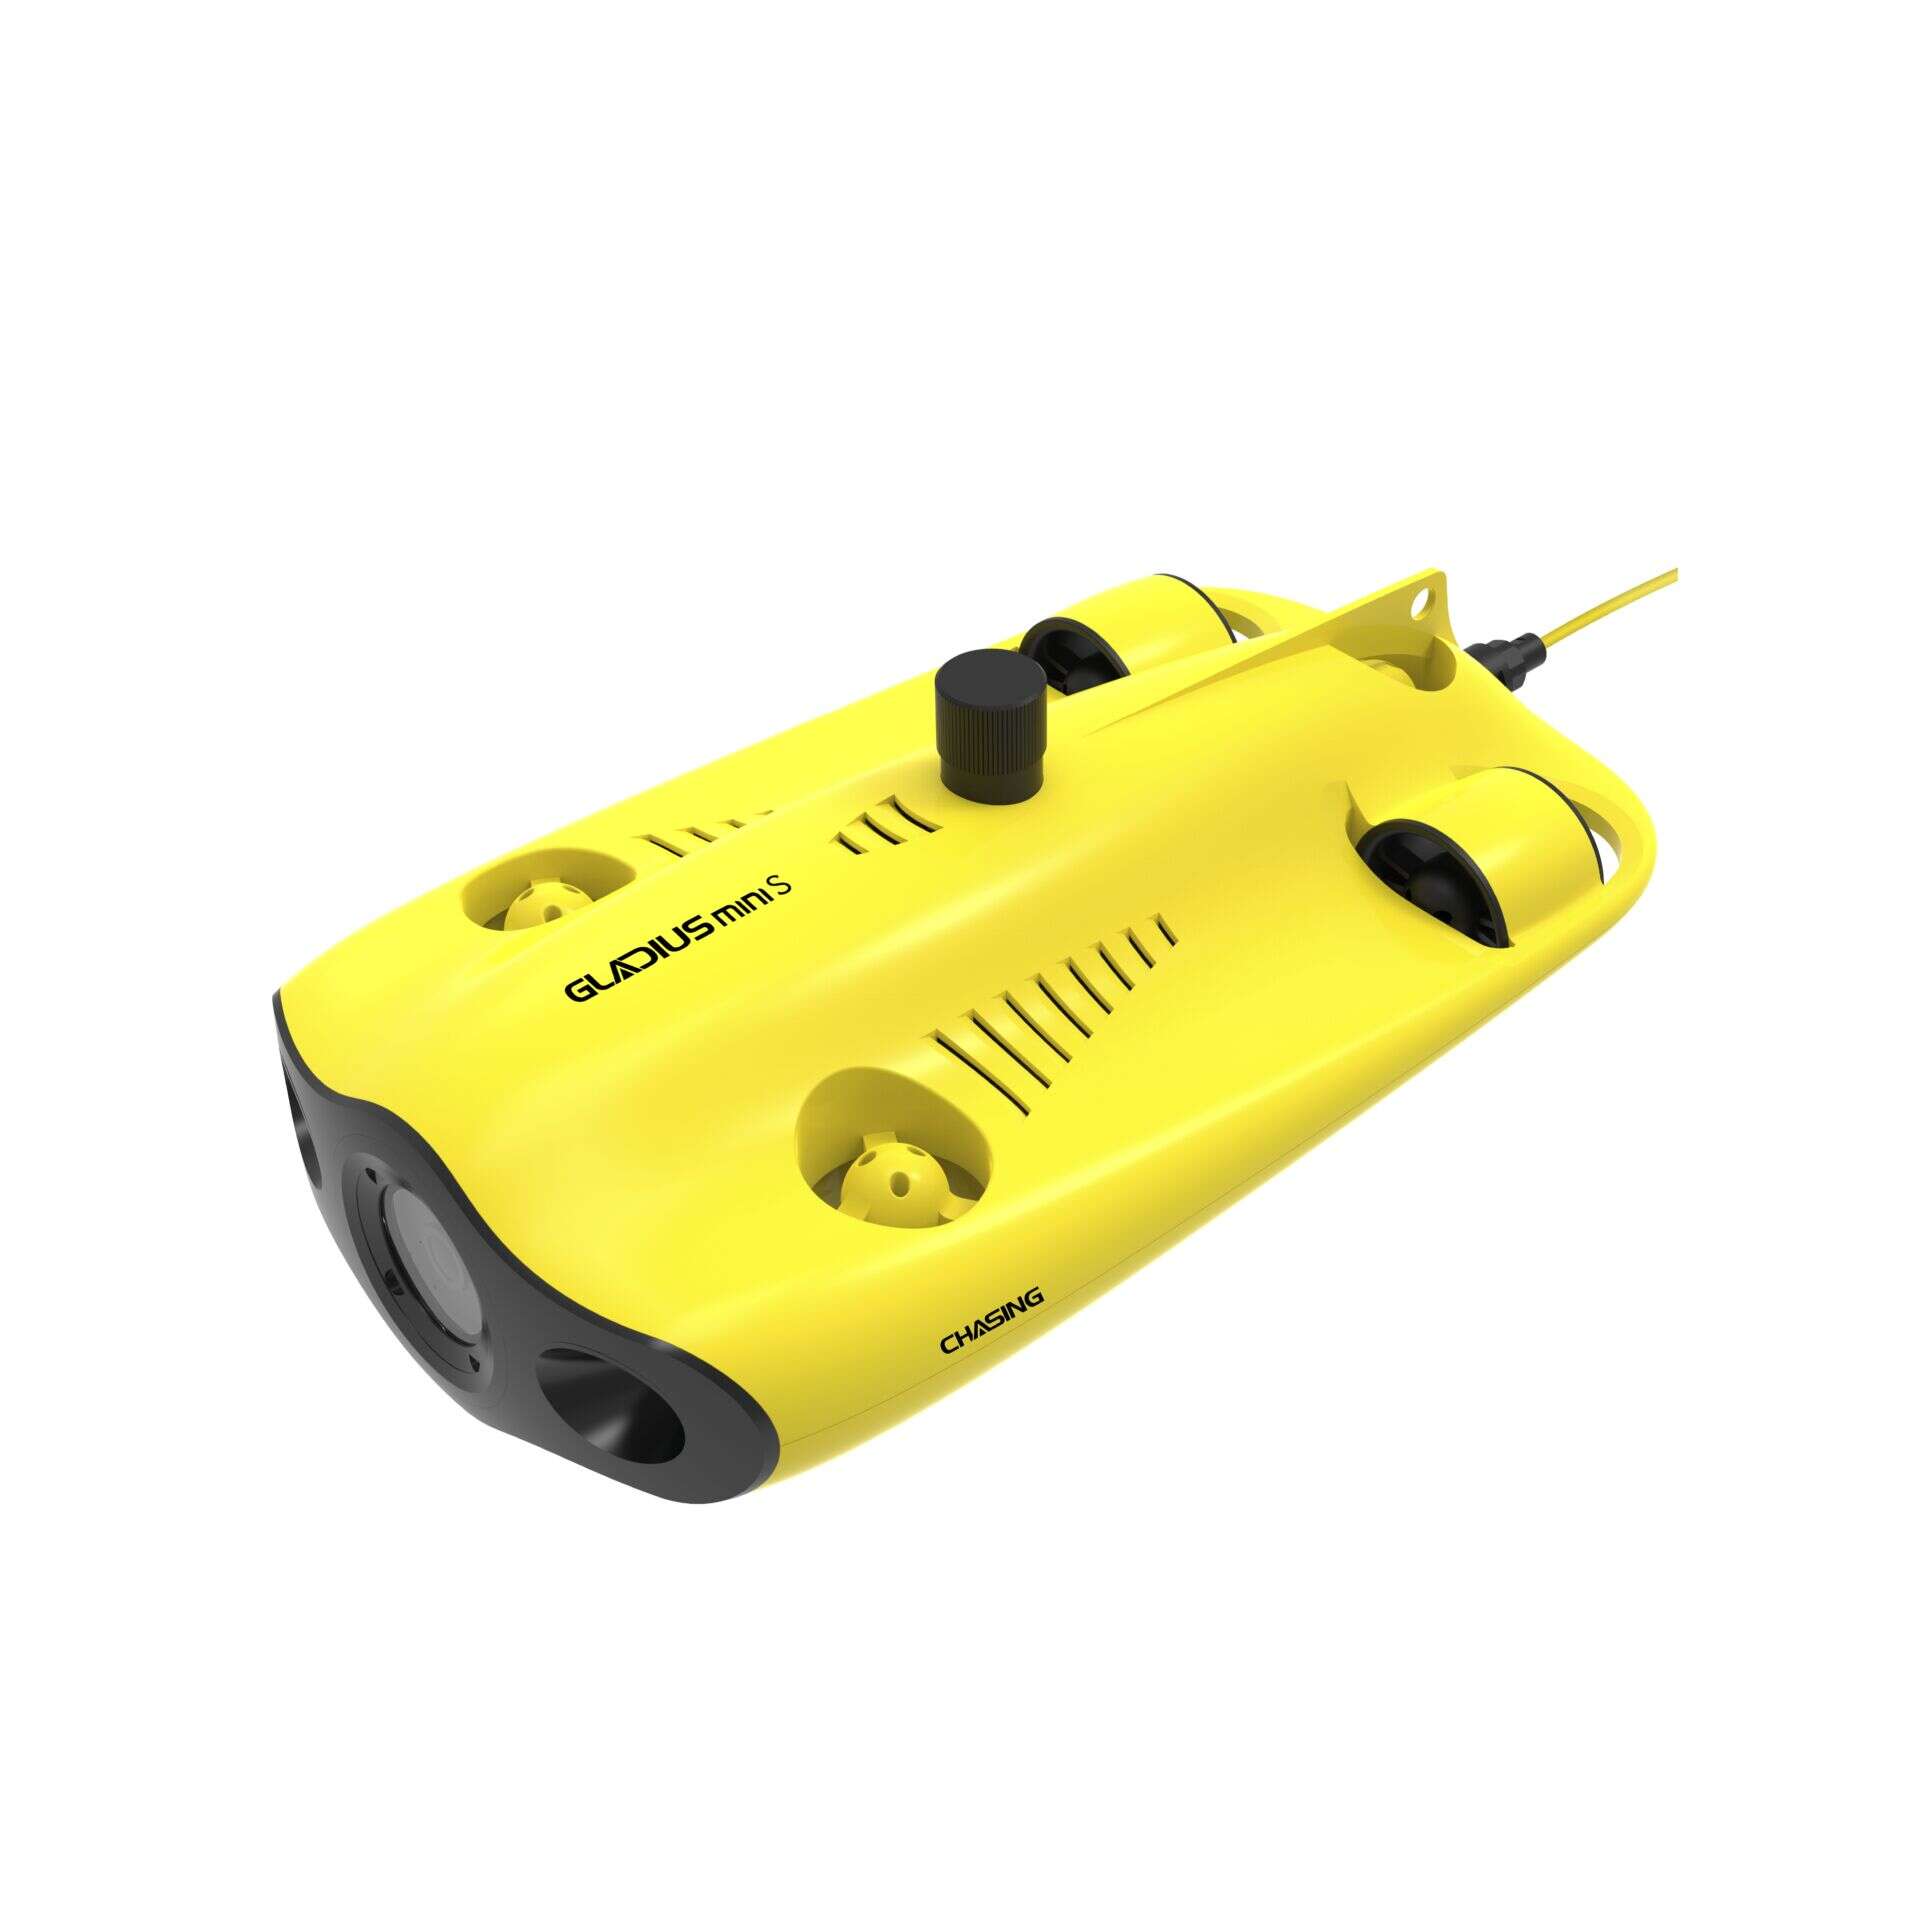 Egyéb chasing gladius mini s 4k víz alatti drón + 200m kábel